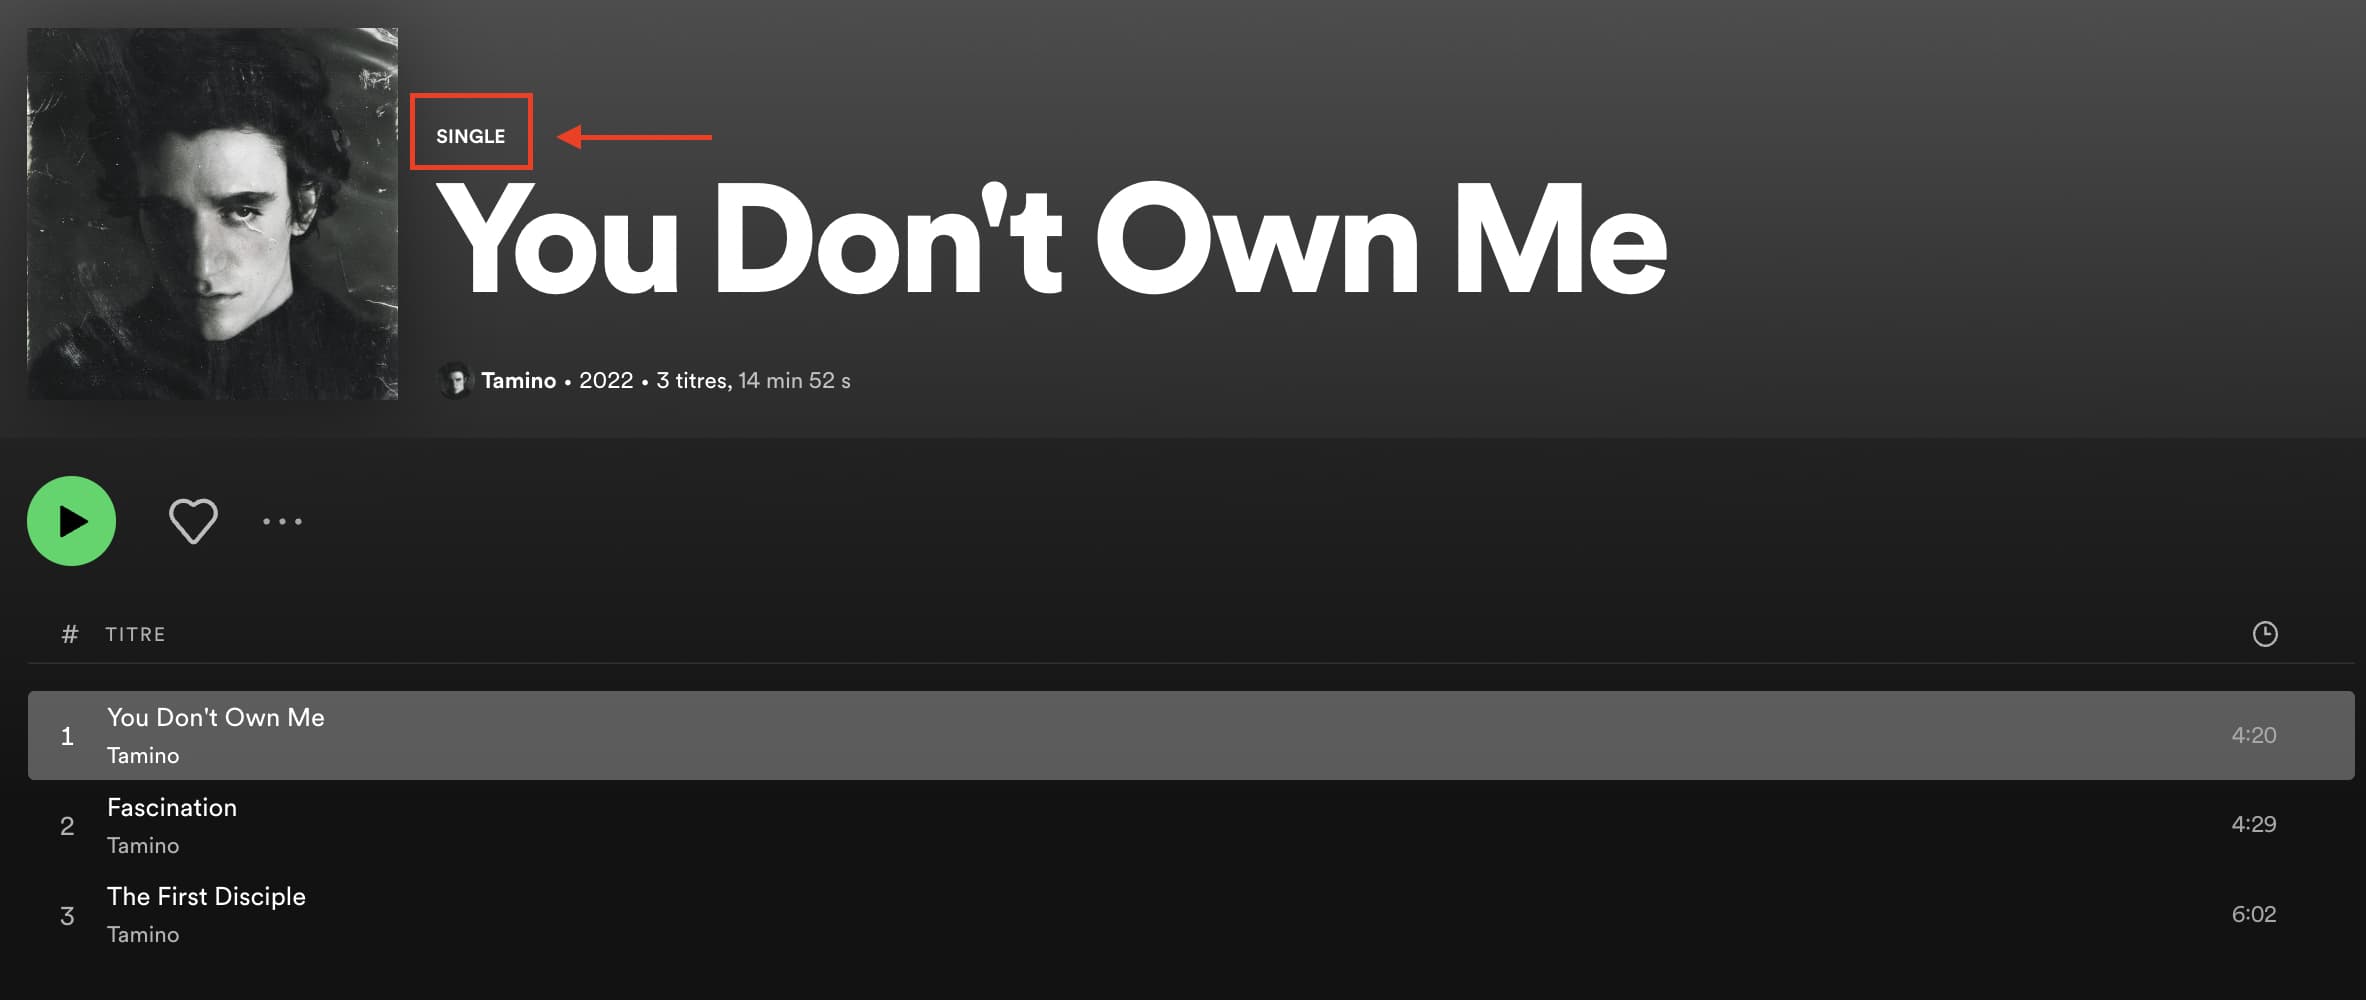 Qu'est-ce qu'un single ? Les trois singles de Tamino "You Don't Own Me" sortis avant son deuxième album "Sahar"